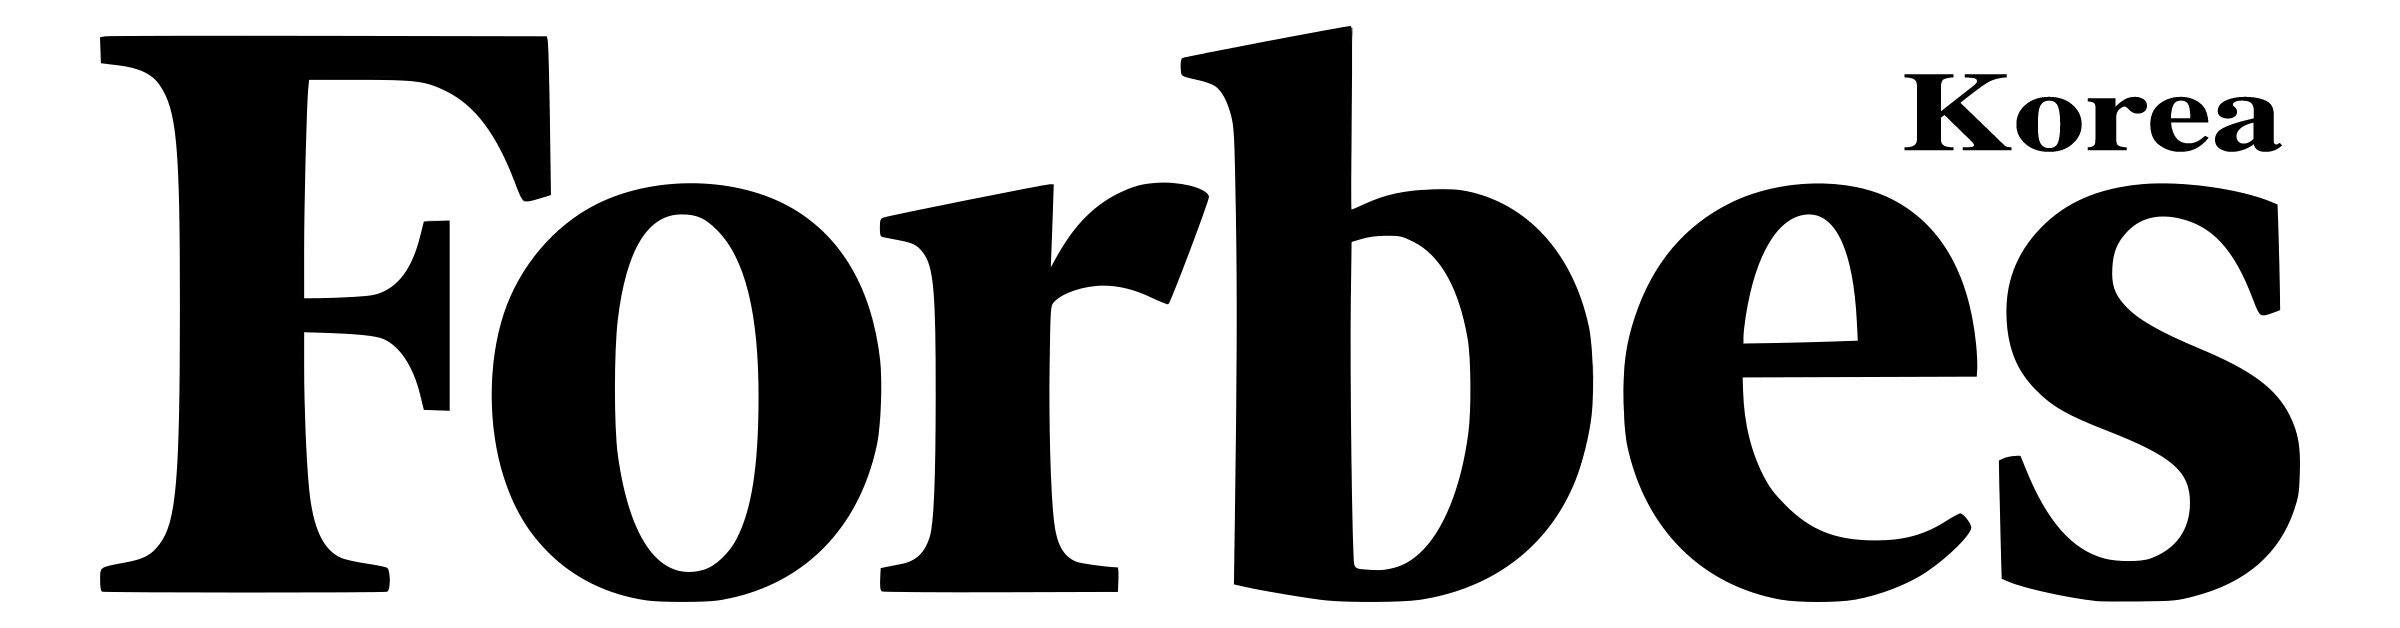 forbes-logo-black-transparentl